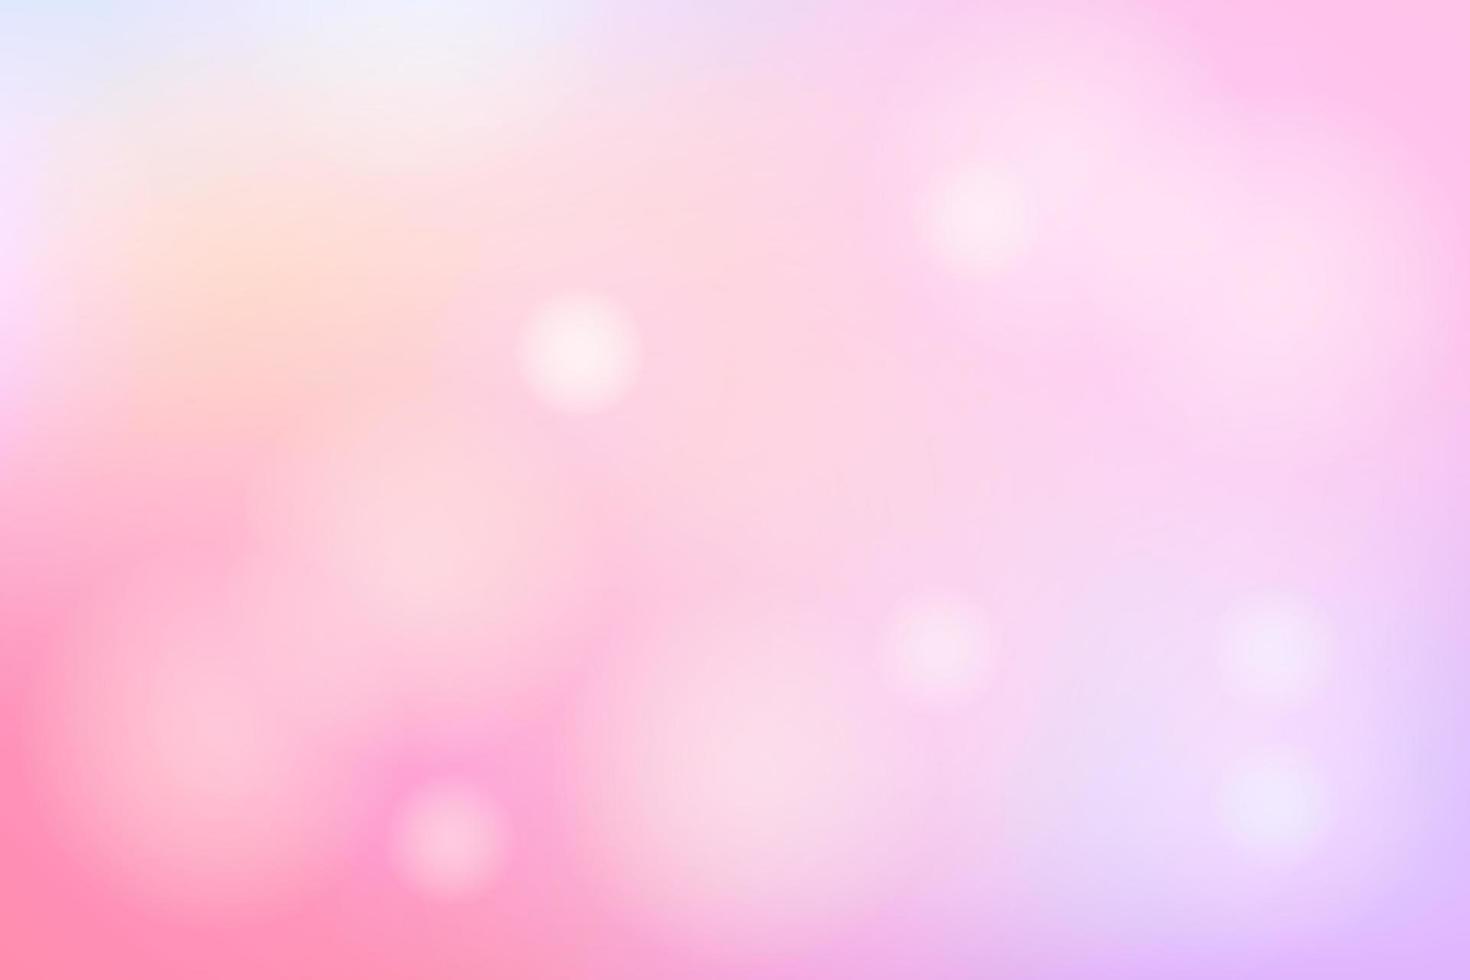 Với nền ánh sáng bokeh mờ màu hồng nhạt mềm mại, bạn sẽ có một màn hình máy tính thật lung linh, nữ tính và lãng mạn. Khi nhìn vào nó, bạn sẽ cảm nhận được sự ấm áp và yên bình, hãy tải và sử dụng ngay hôm nay để cảm nhận trọn vẹn sự đẹp đẽ của nó!